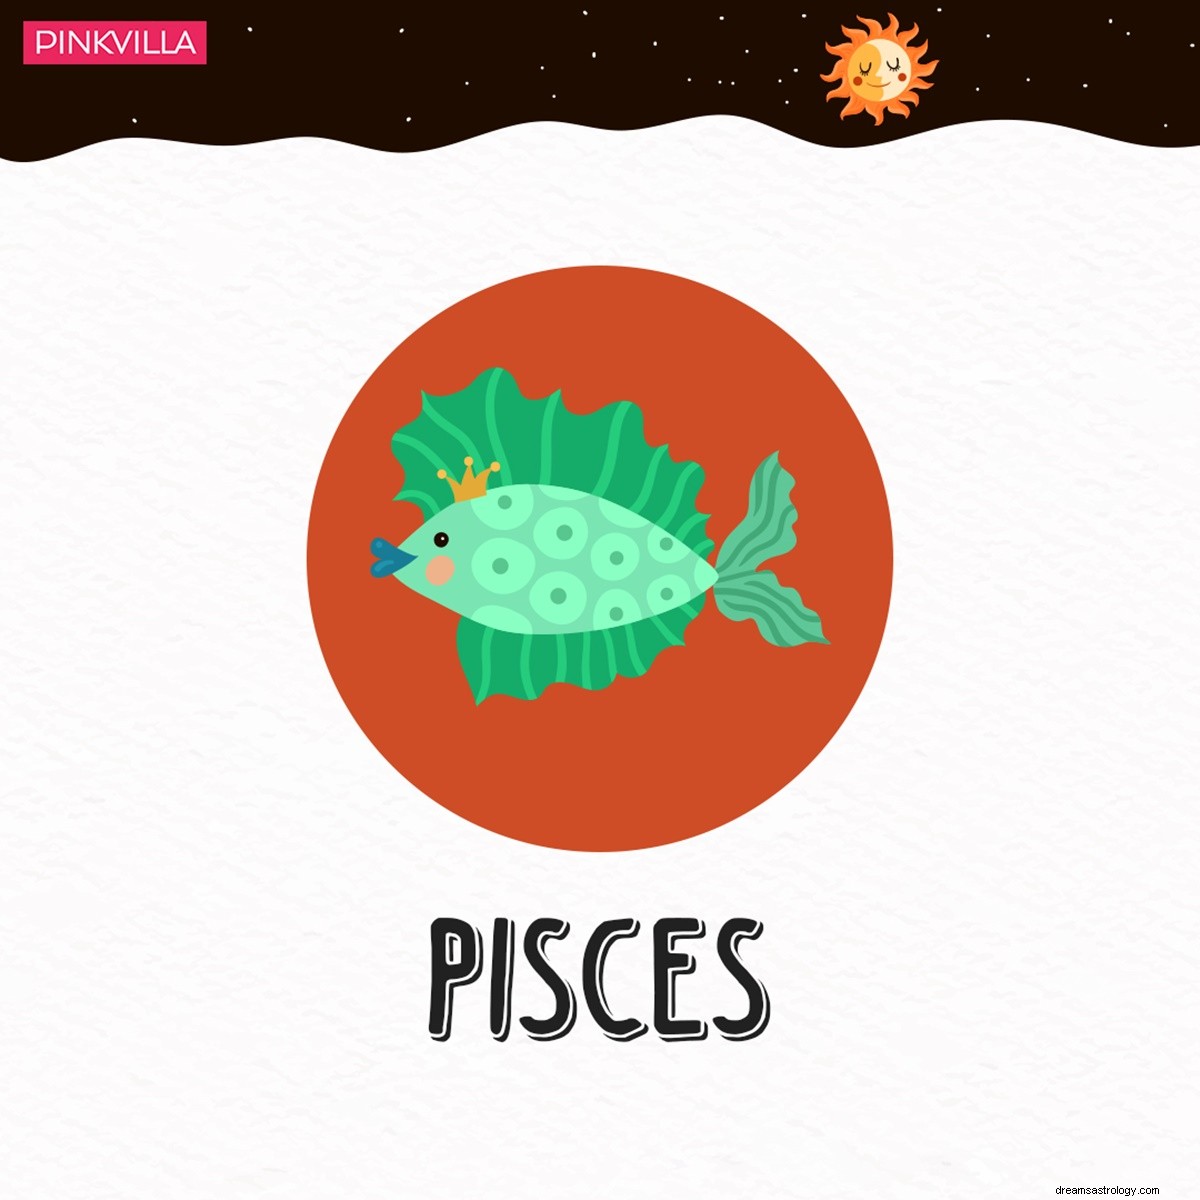 Vissen tot Stier:4 sterrenbeelden die aardigheden nabootsen in plaats van hun ware kleuren te laten zien 